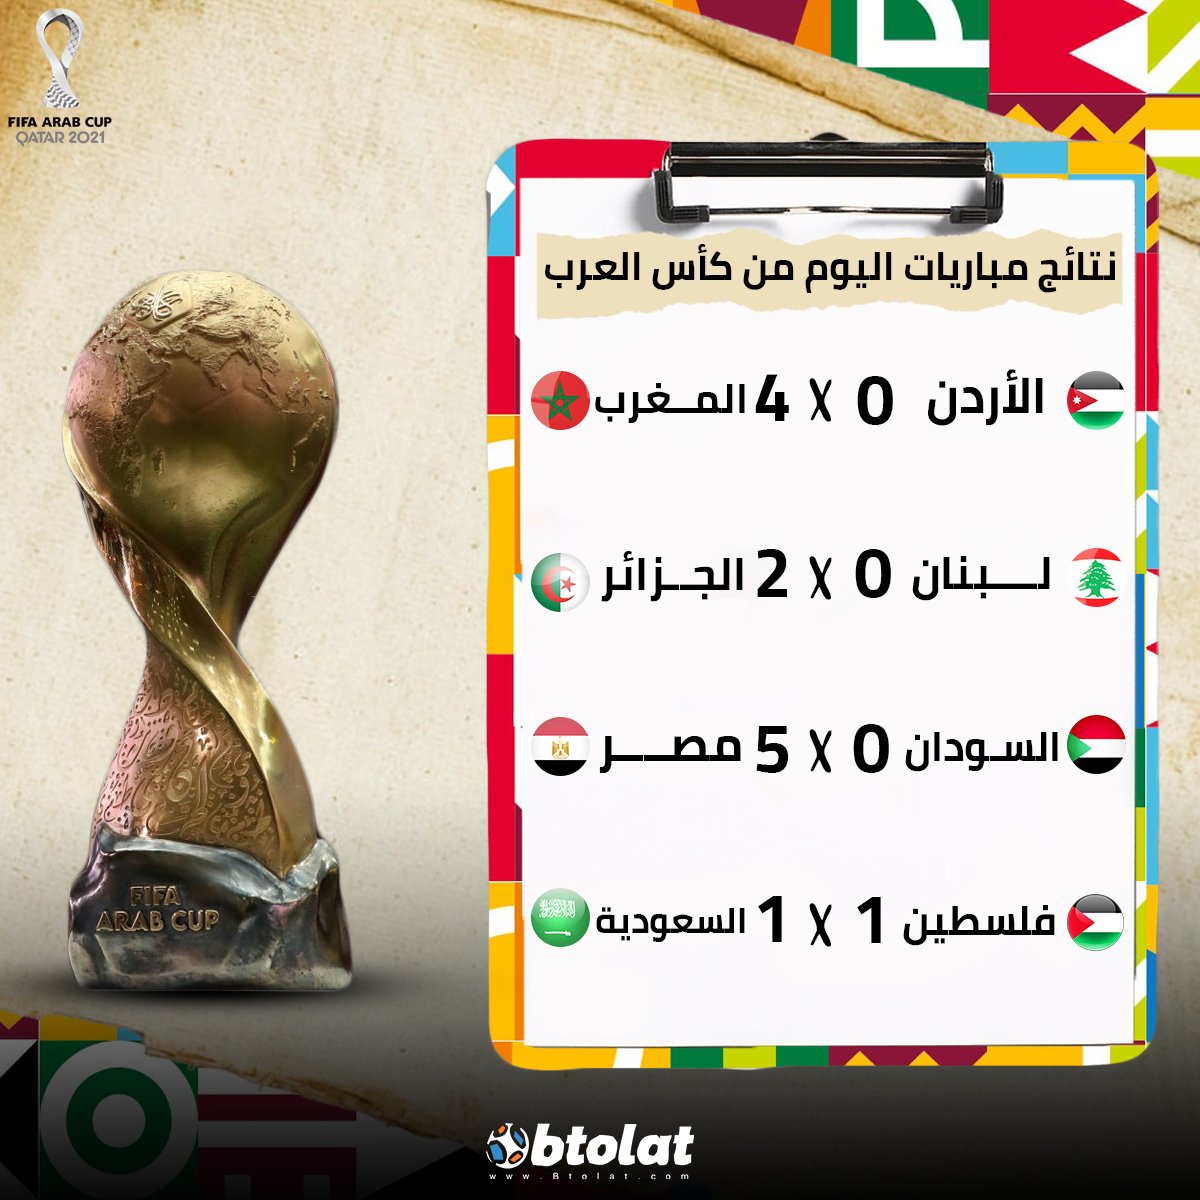 نتائج مباريات كاس العرب